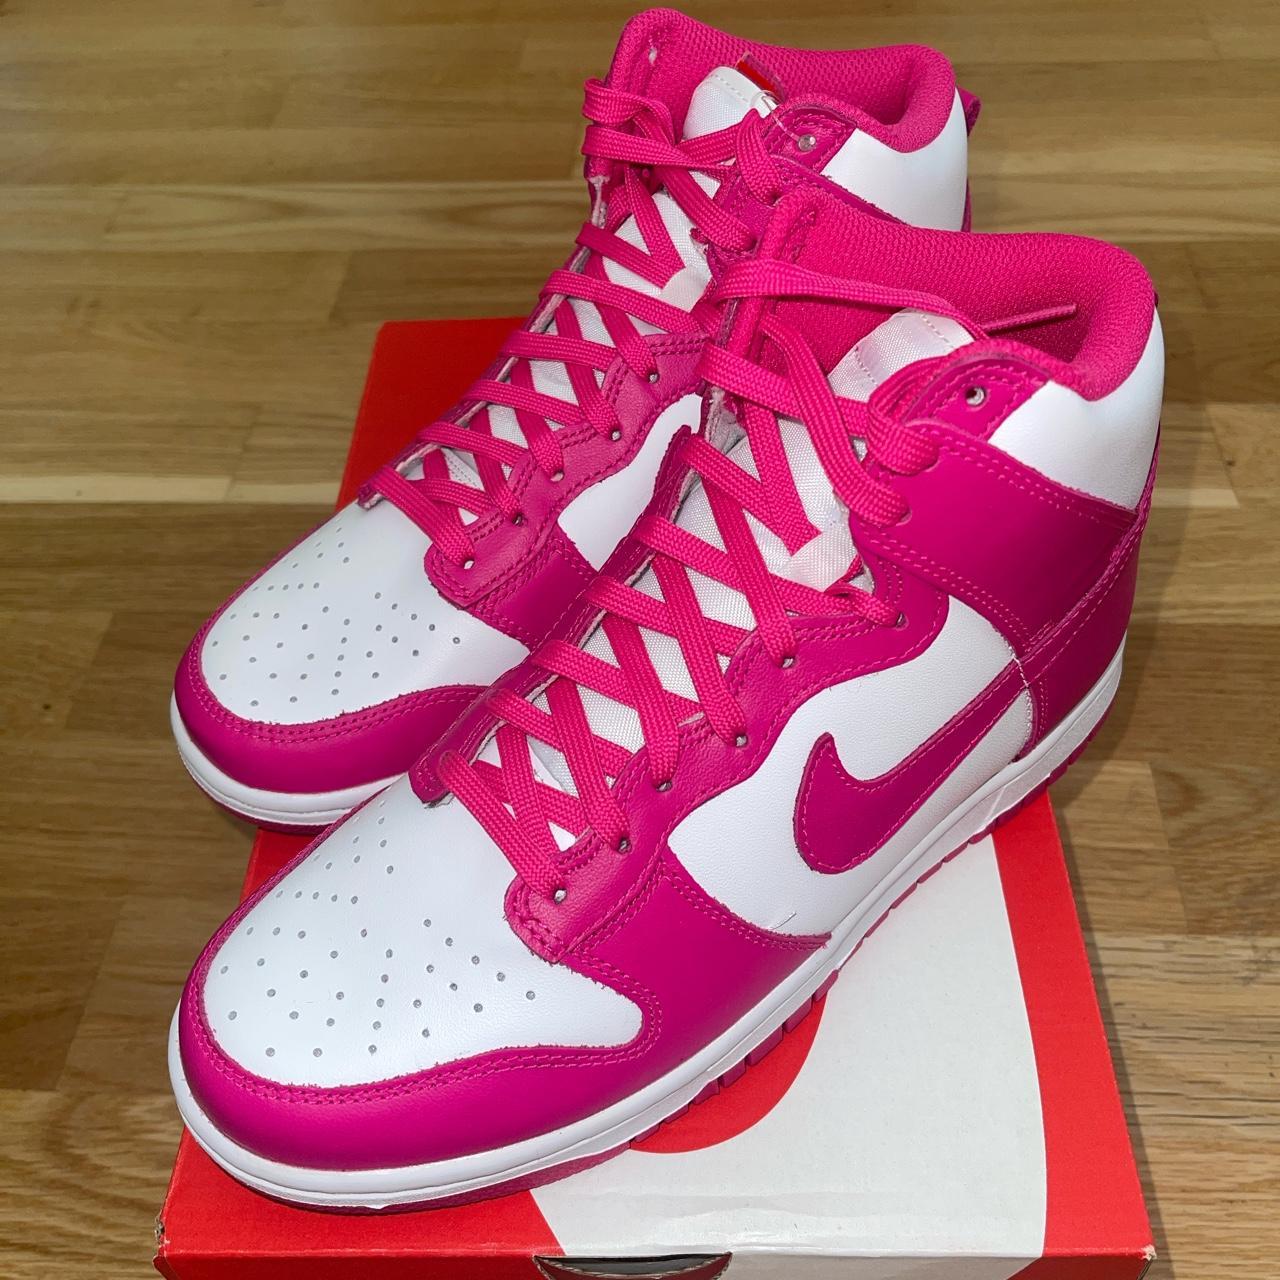 Nike Dunk High Pink Prime UK5/US7.5 100% genuine,... - Depop